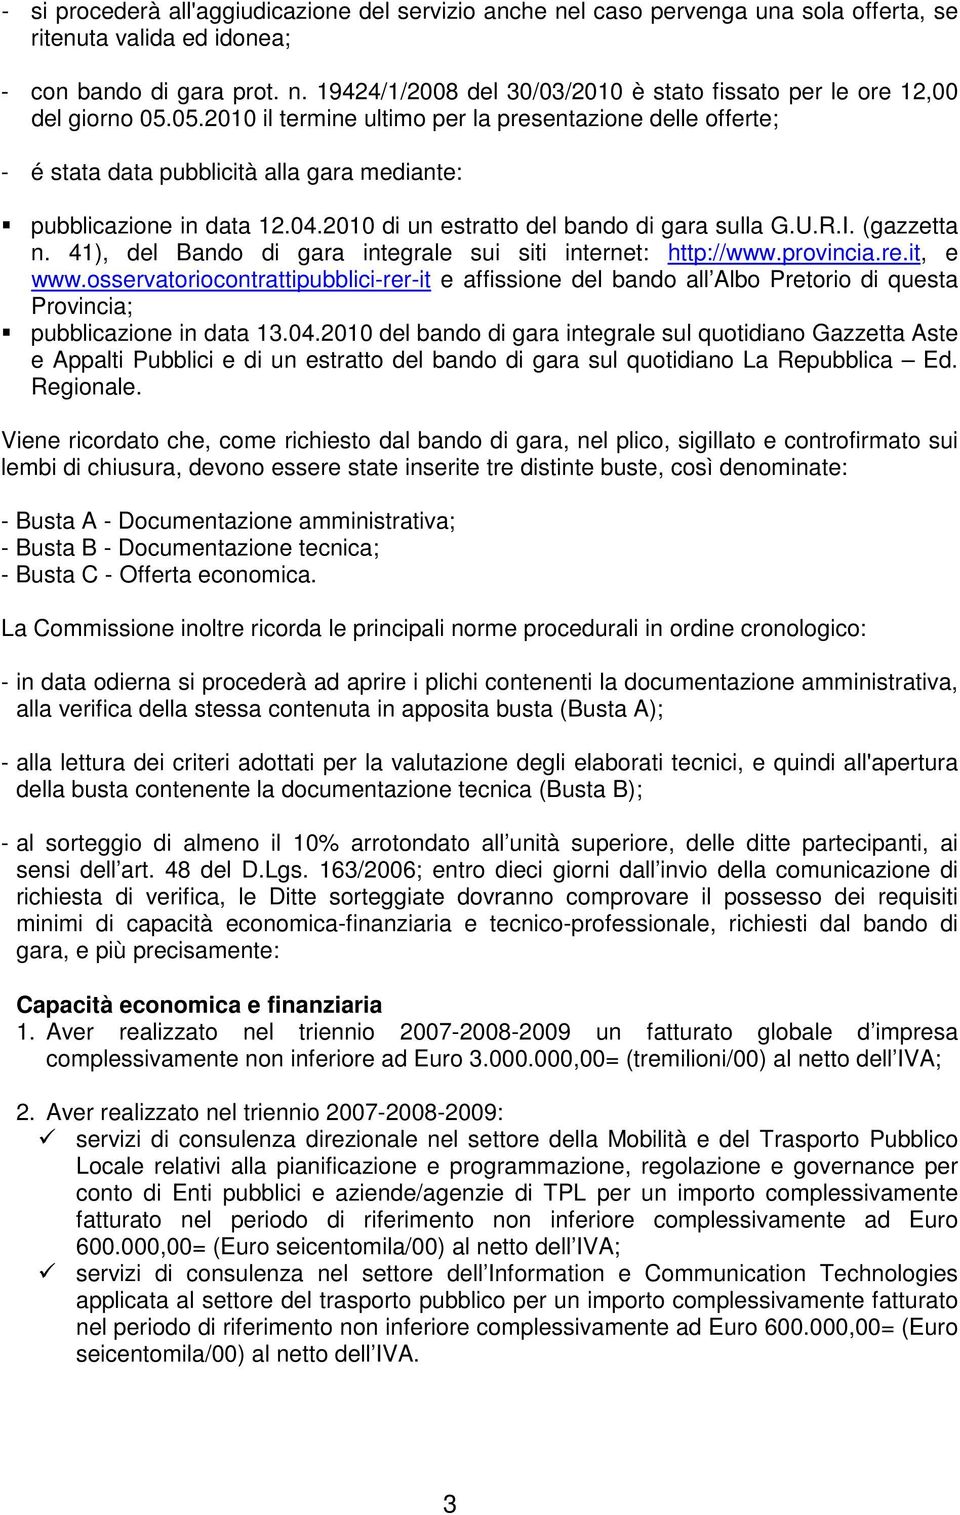 (gazzetta n. 41), del Bando di gara integrale sui siti internet: http://www.provincia.re.it, e www.